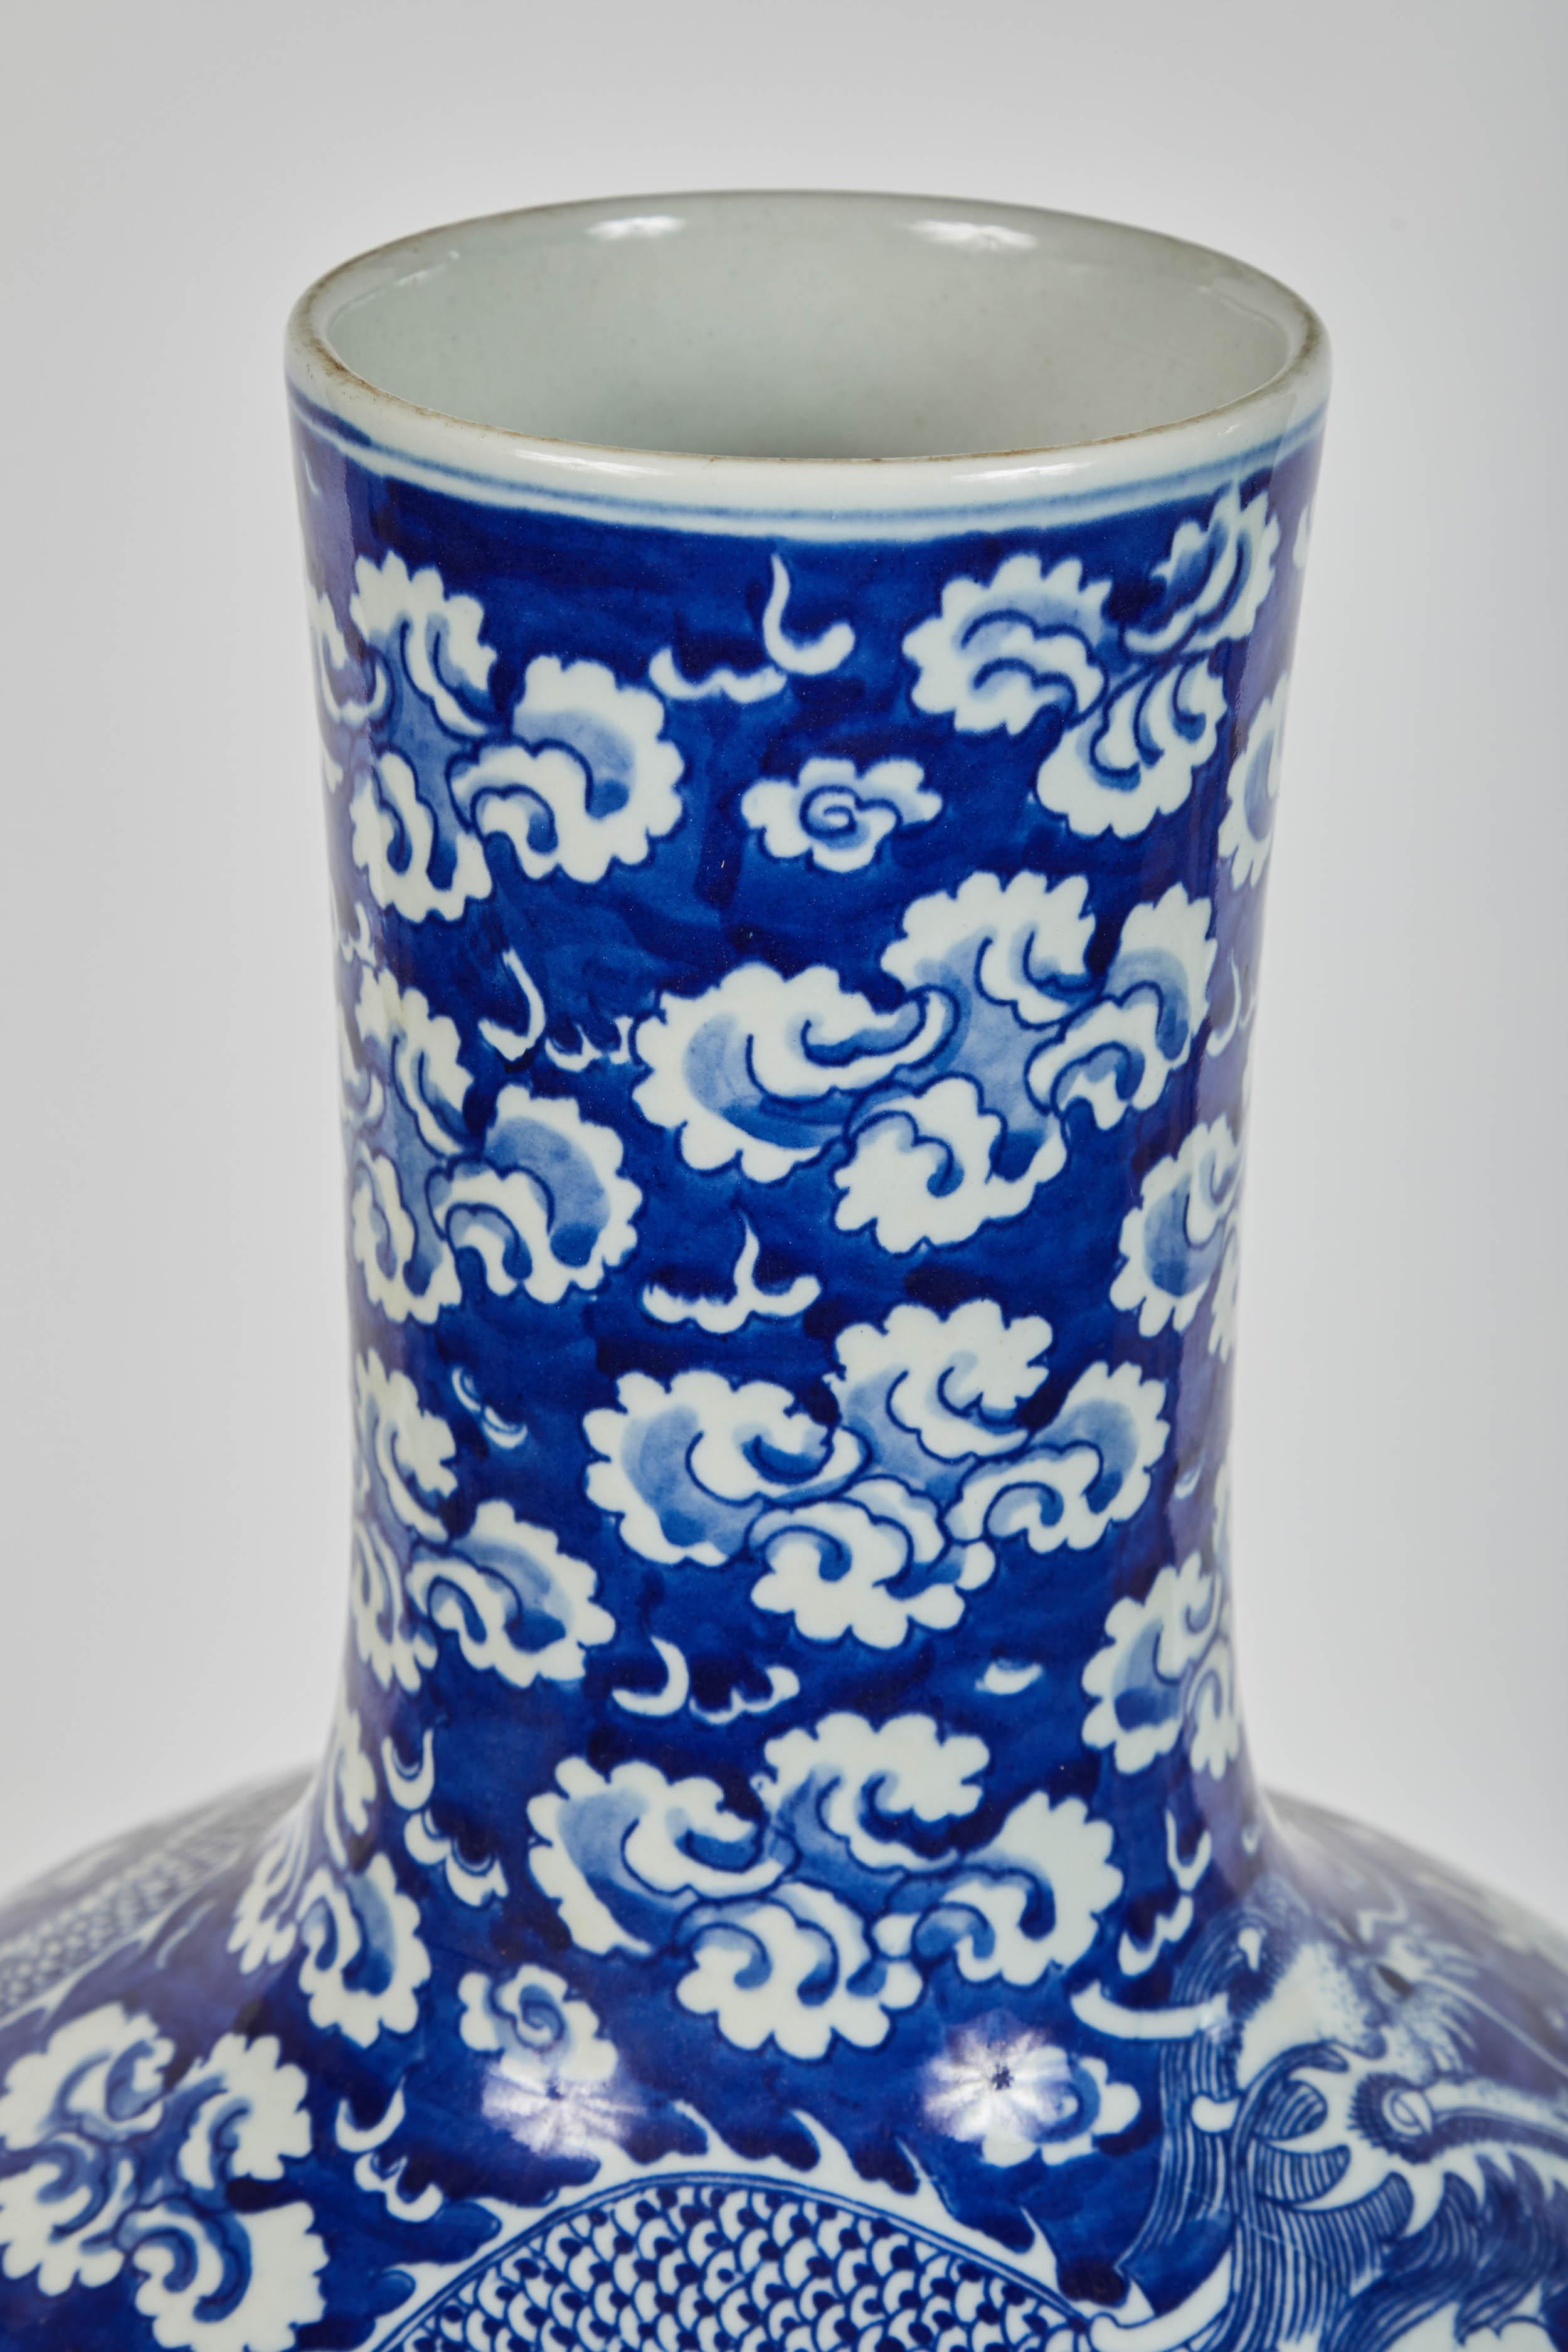 Feine chinesische Porzellanvase aus der Mitte des 20. Jahrhunderts in blau-weißer traditioneller Kalebassenform mit einem großen vierköpfigen Drachen. Schönes Wolkenmotiv.